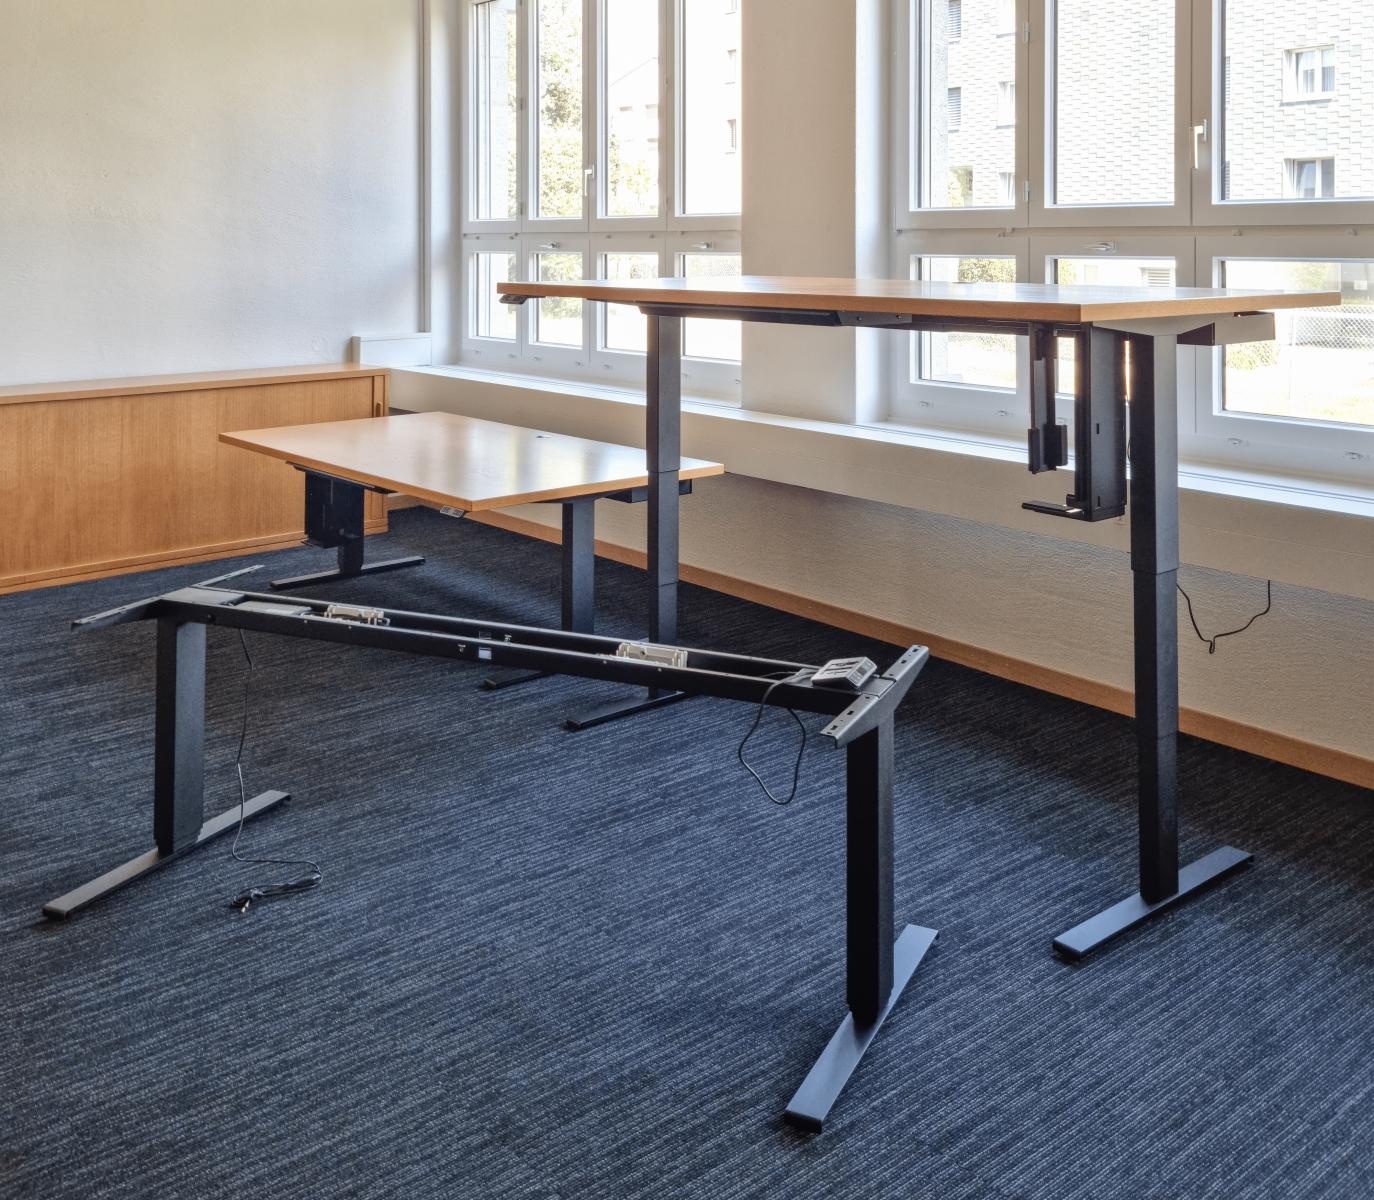 Umrüstung von Büro-Schreibtischen: Gestell und Fertige montierte Tische